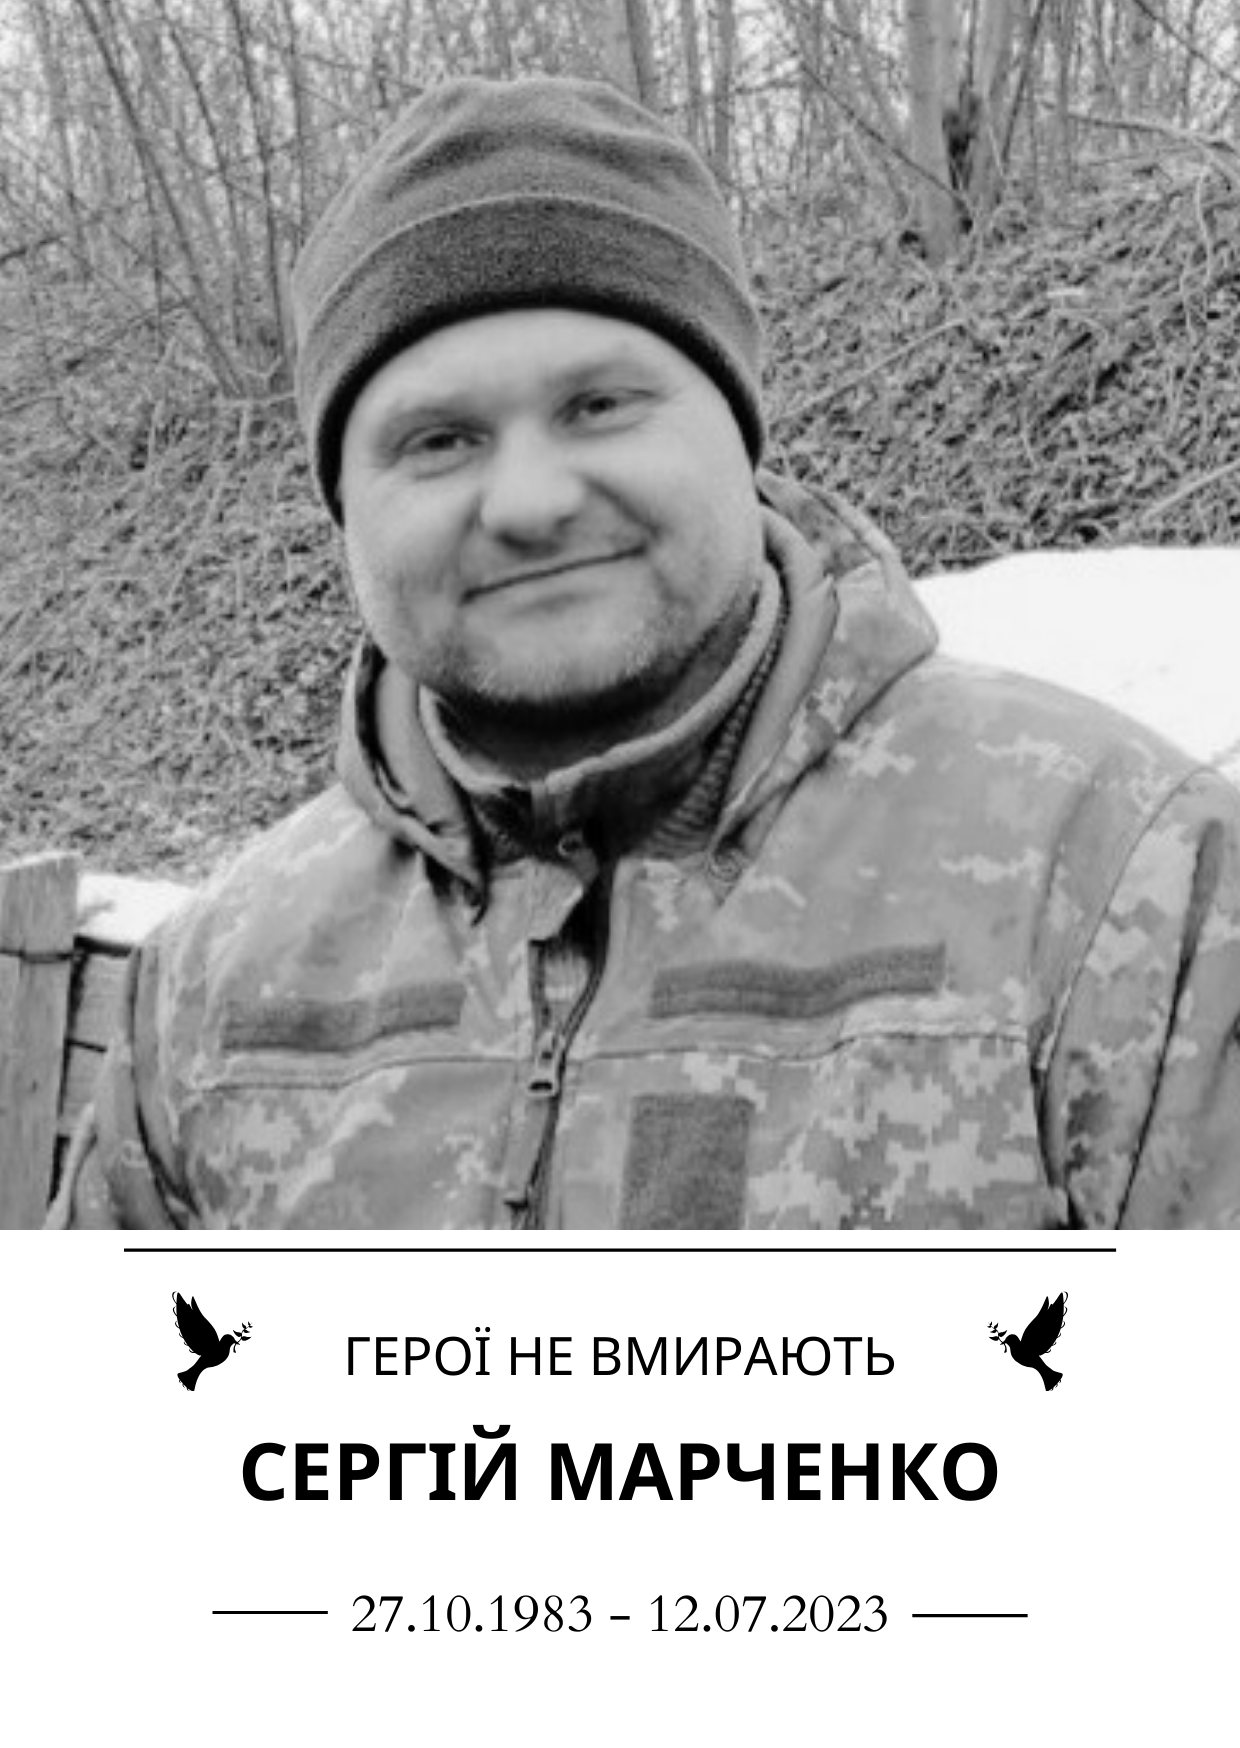 Сергій Марченко Роки життя 27.10.1983-12.07.2023 Герої не вмирають